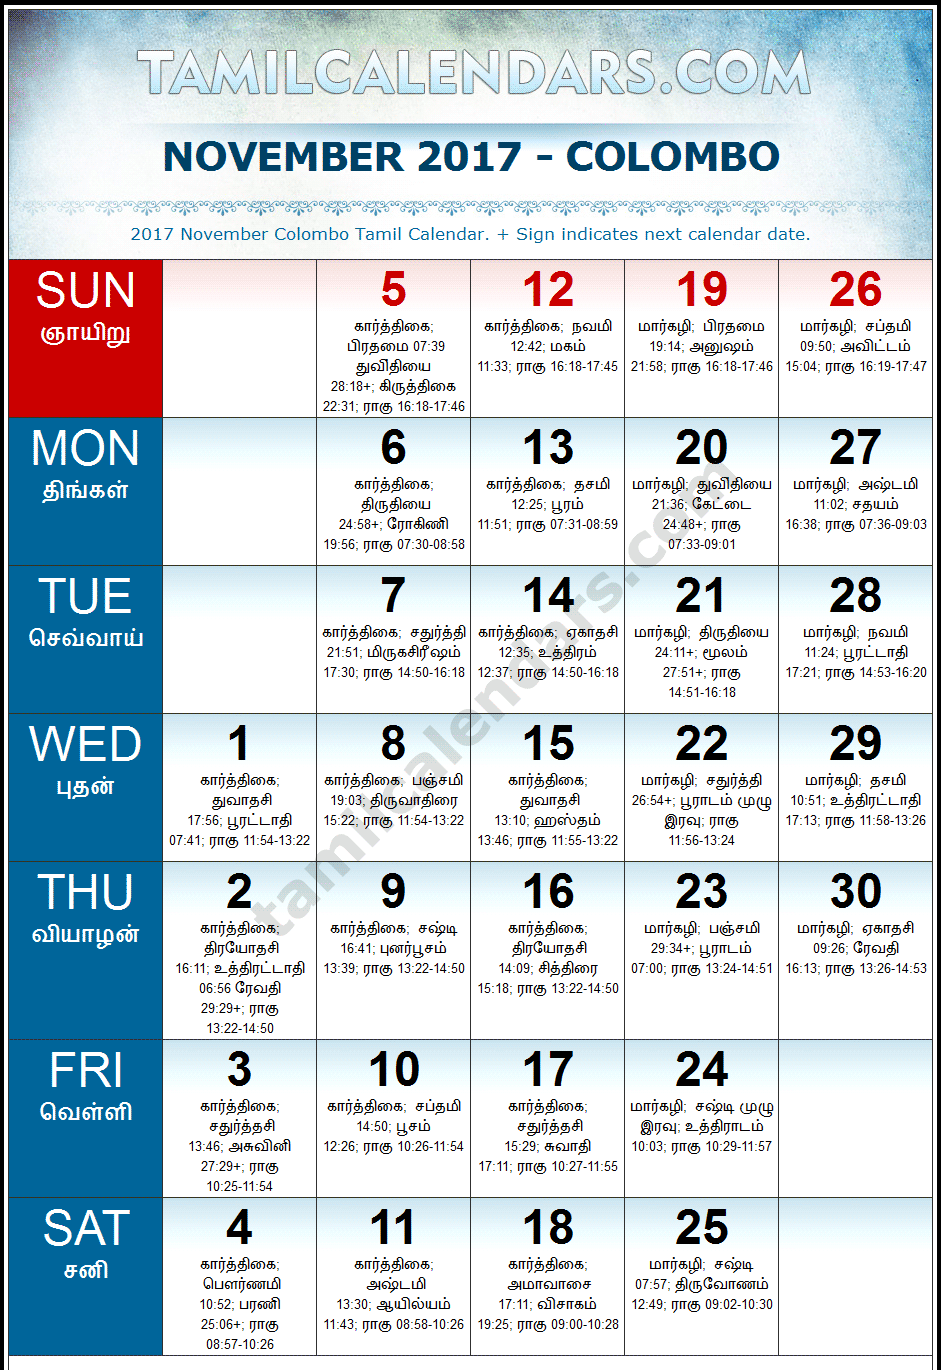 November 2017 Tamil Calendar for Sri Lanka (Colombo)